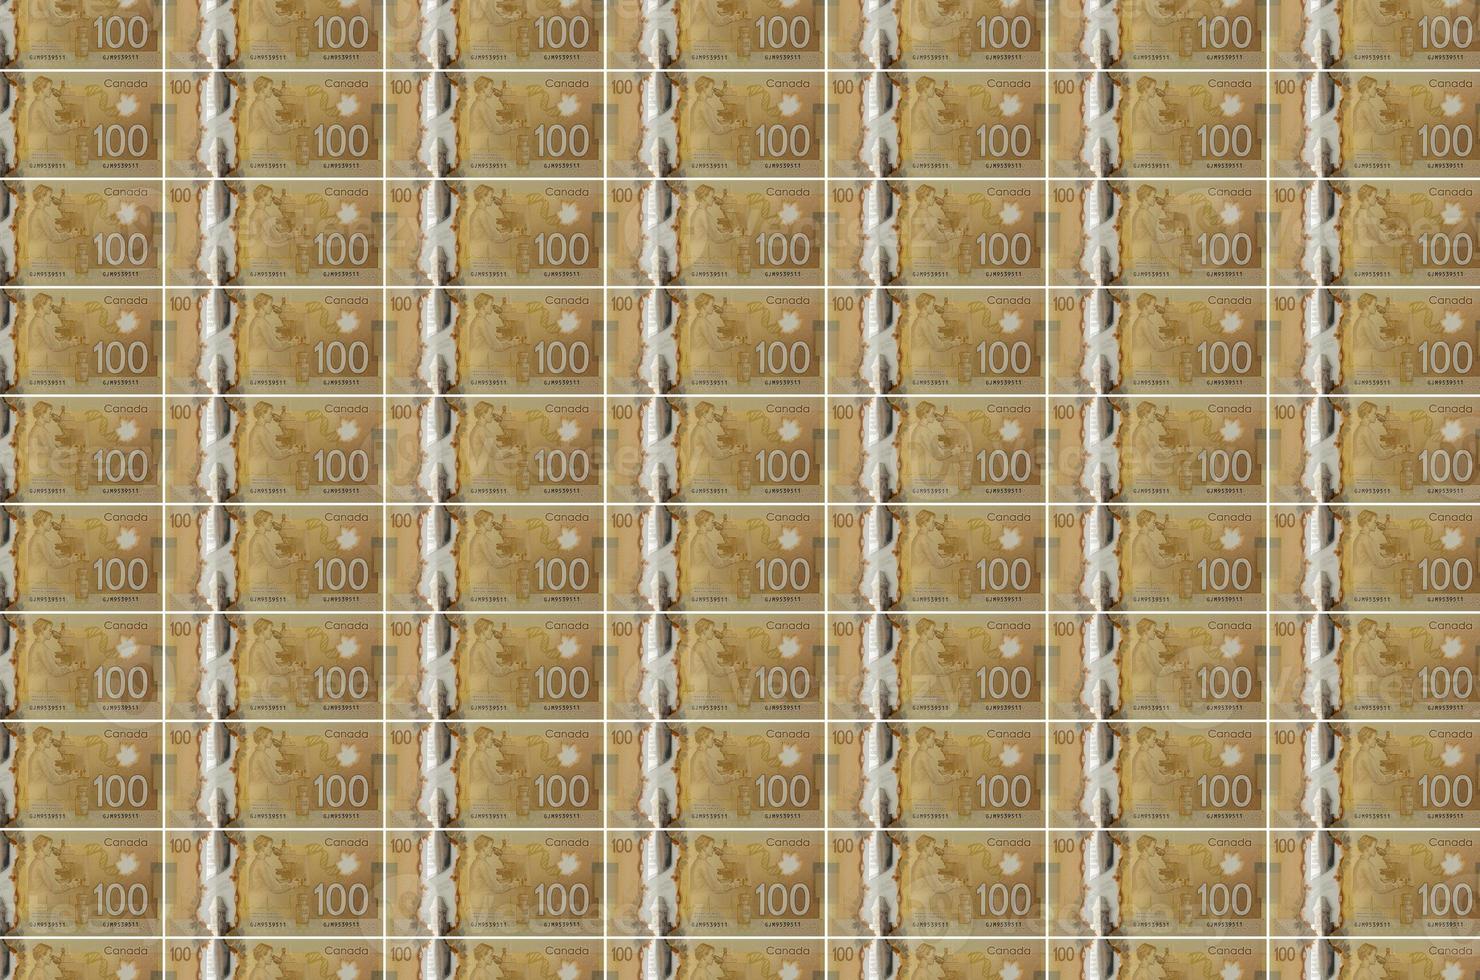 Notas de 100 dólares canadenses impressas no transportador de produção de dinheiro. colagem de muitas contas. conceito de desvalorização da moeda foto